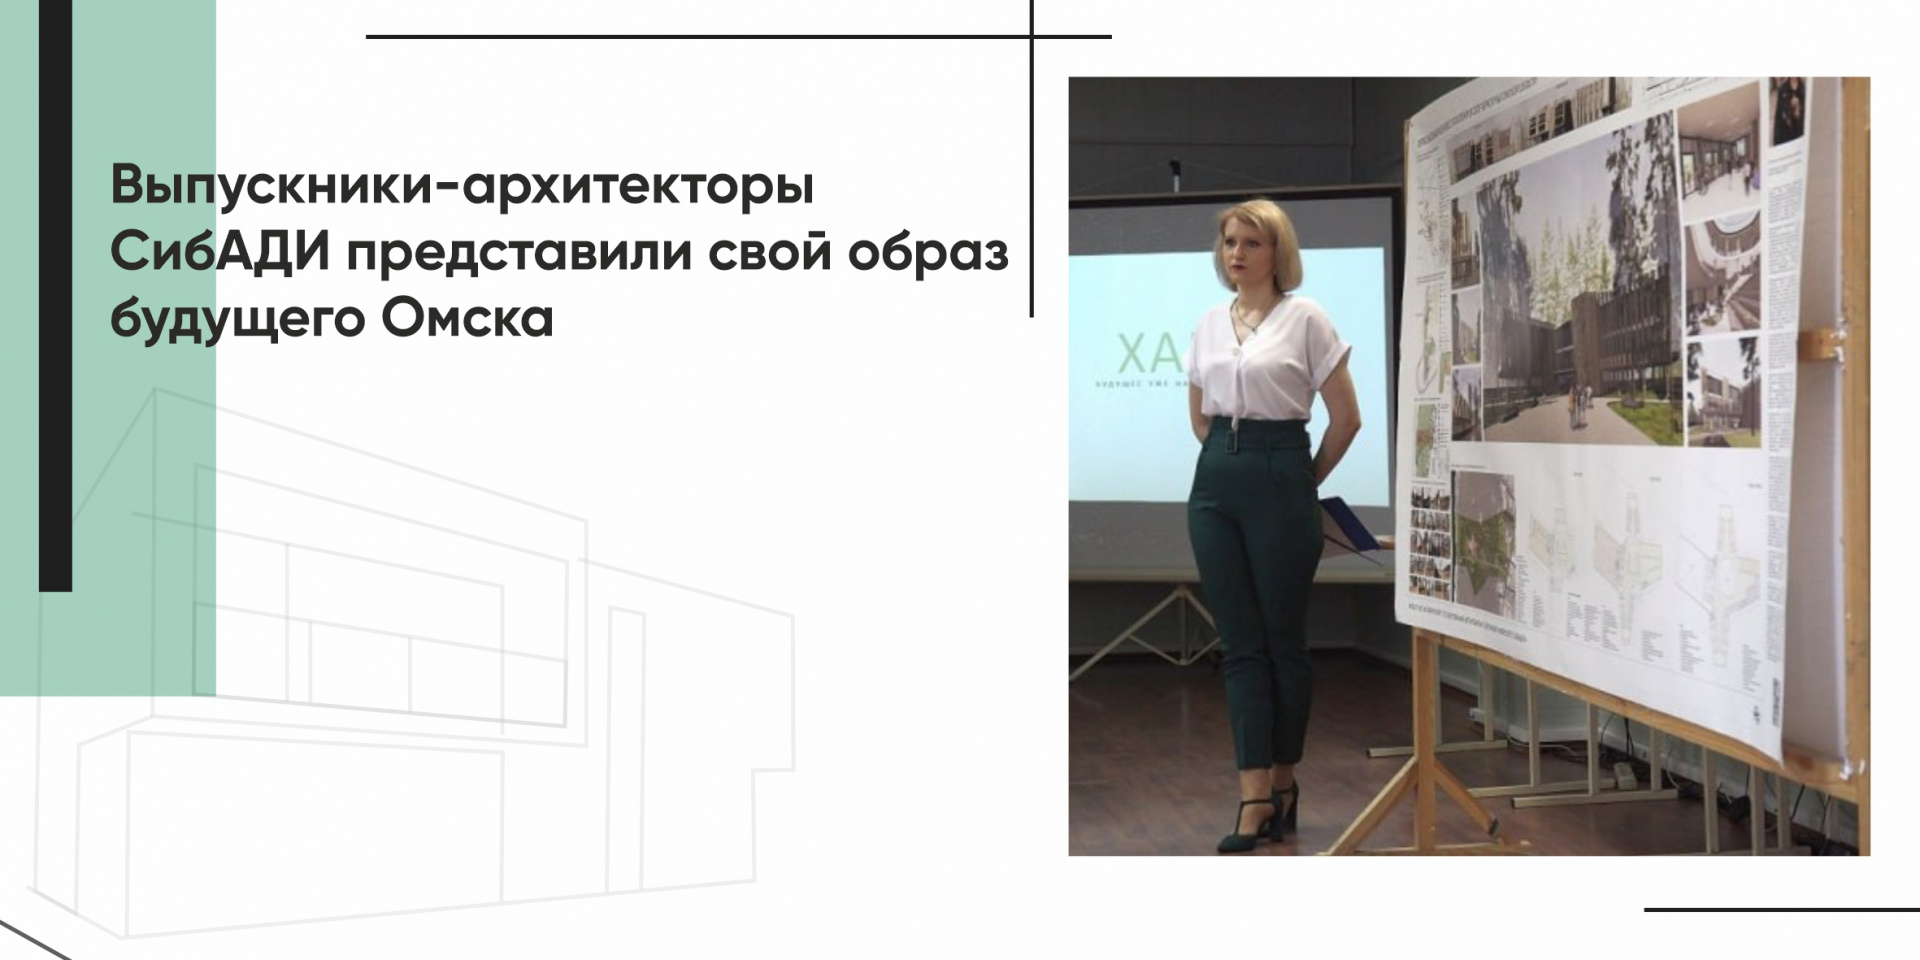 Выпускники-архитекторы СибАДИ представили свой образ будущего Омска 